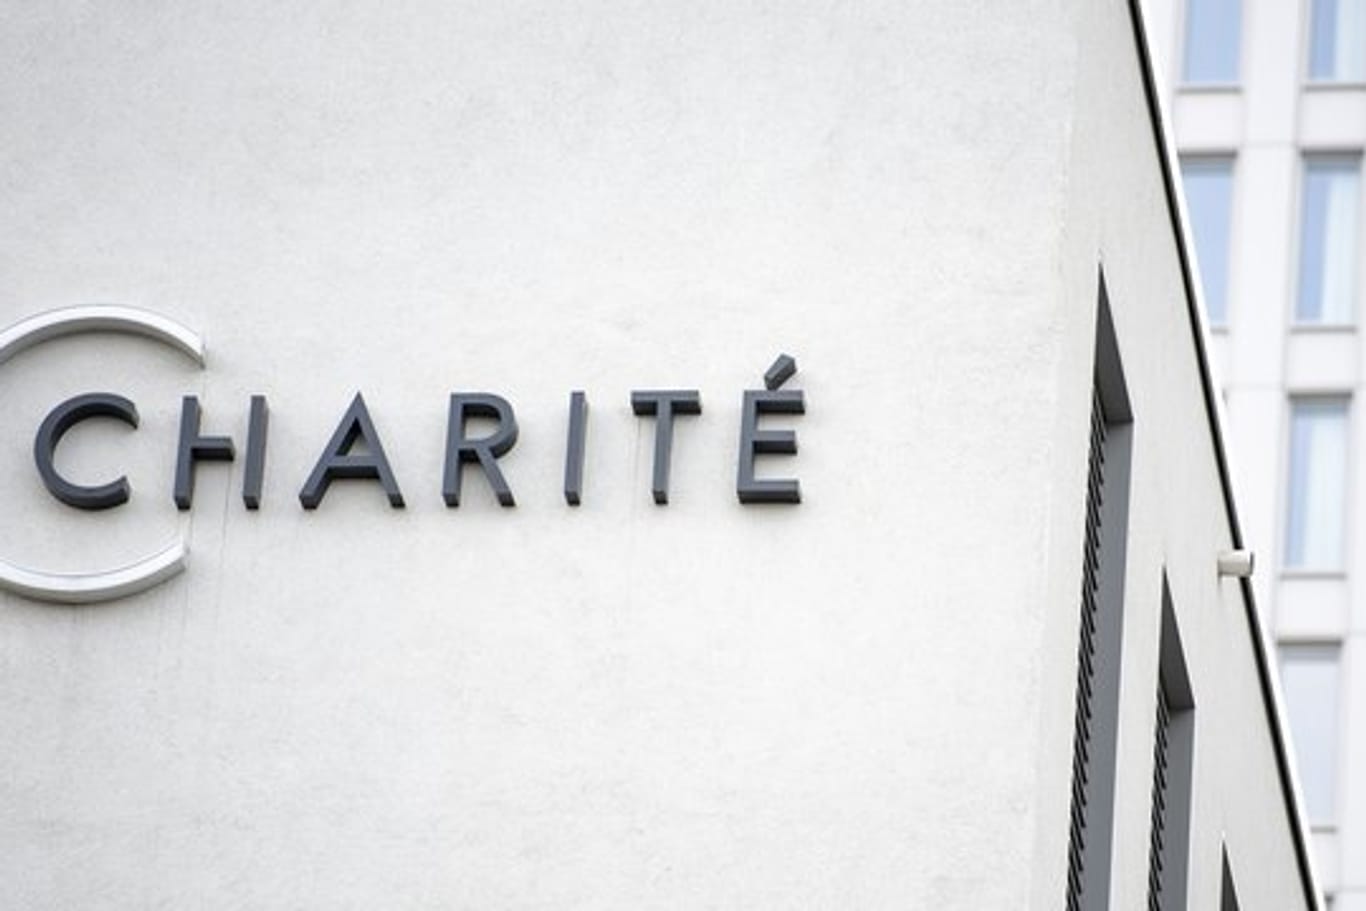 Das Logo der Charité am Eingang der Zentralen Notaufnahme.